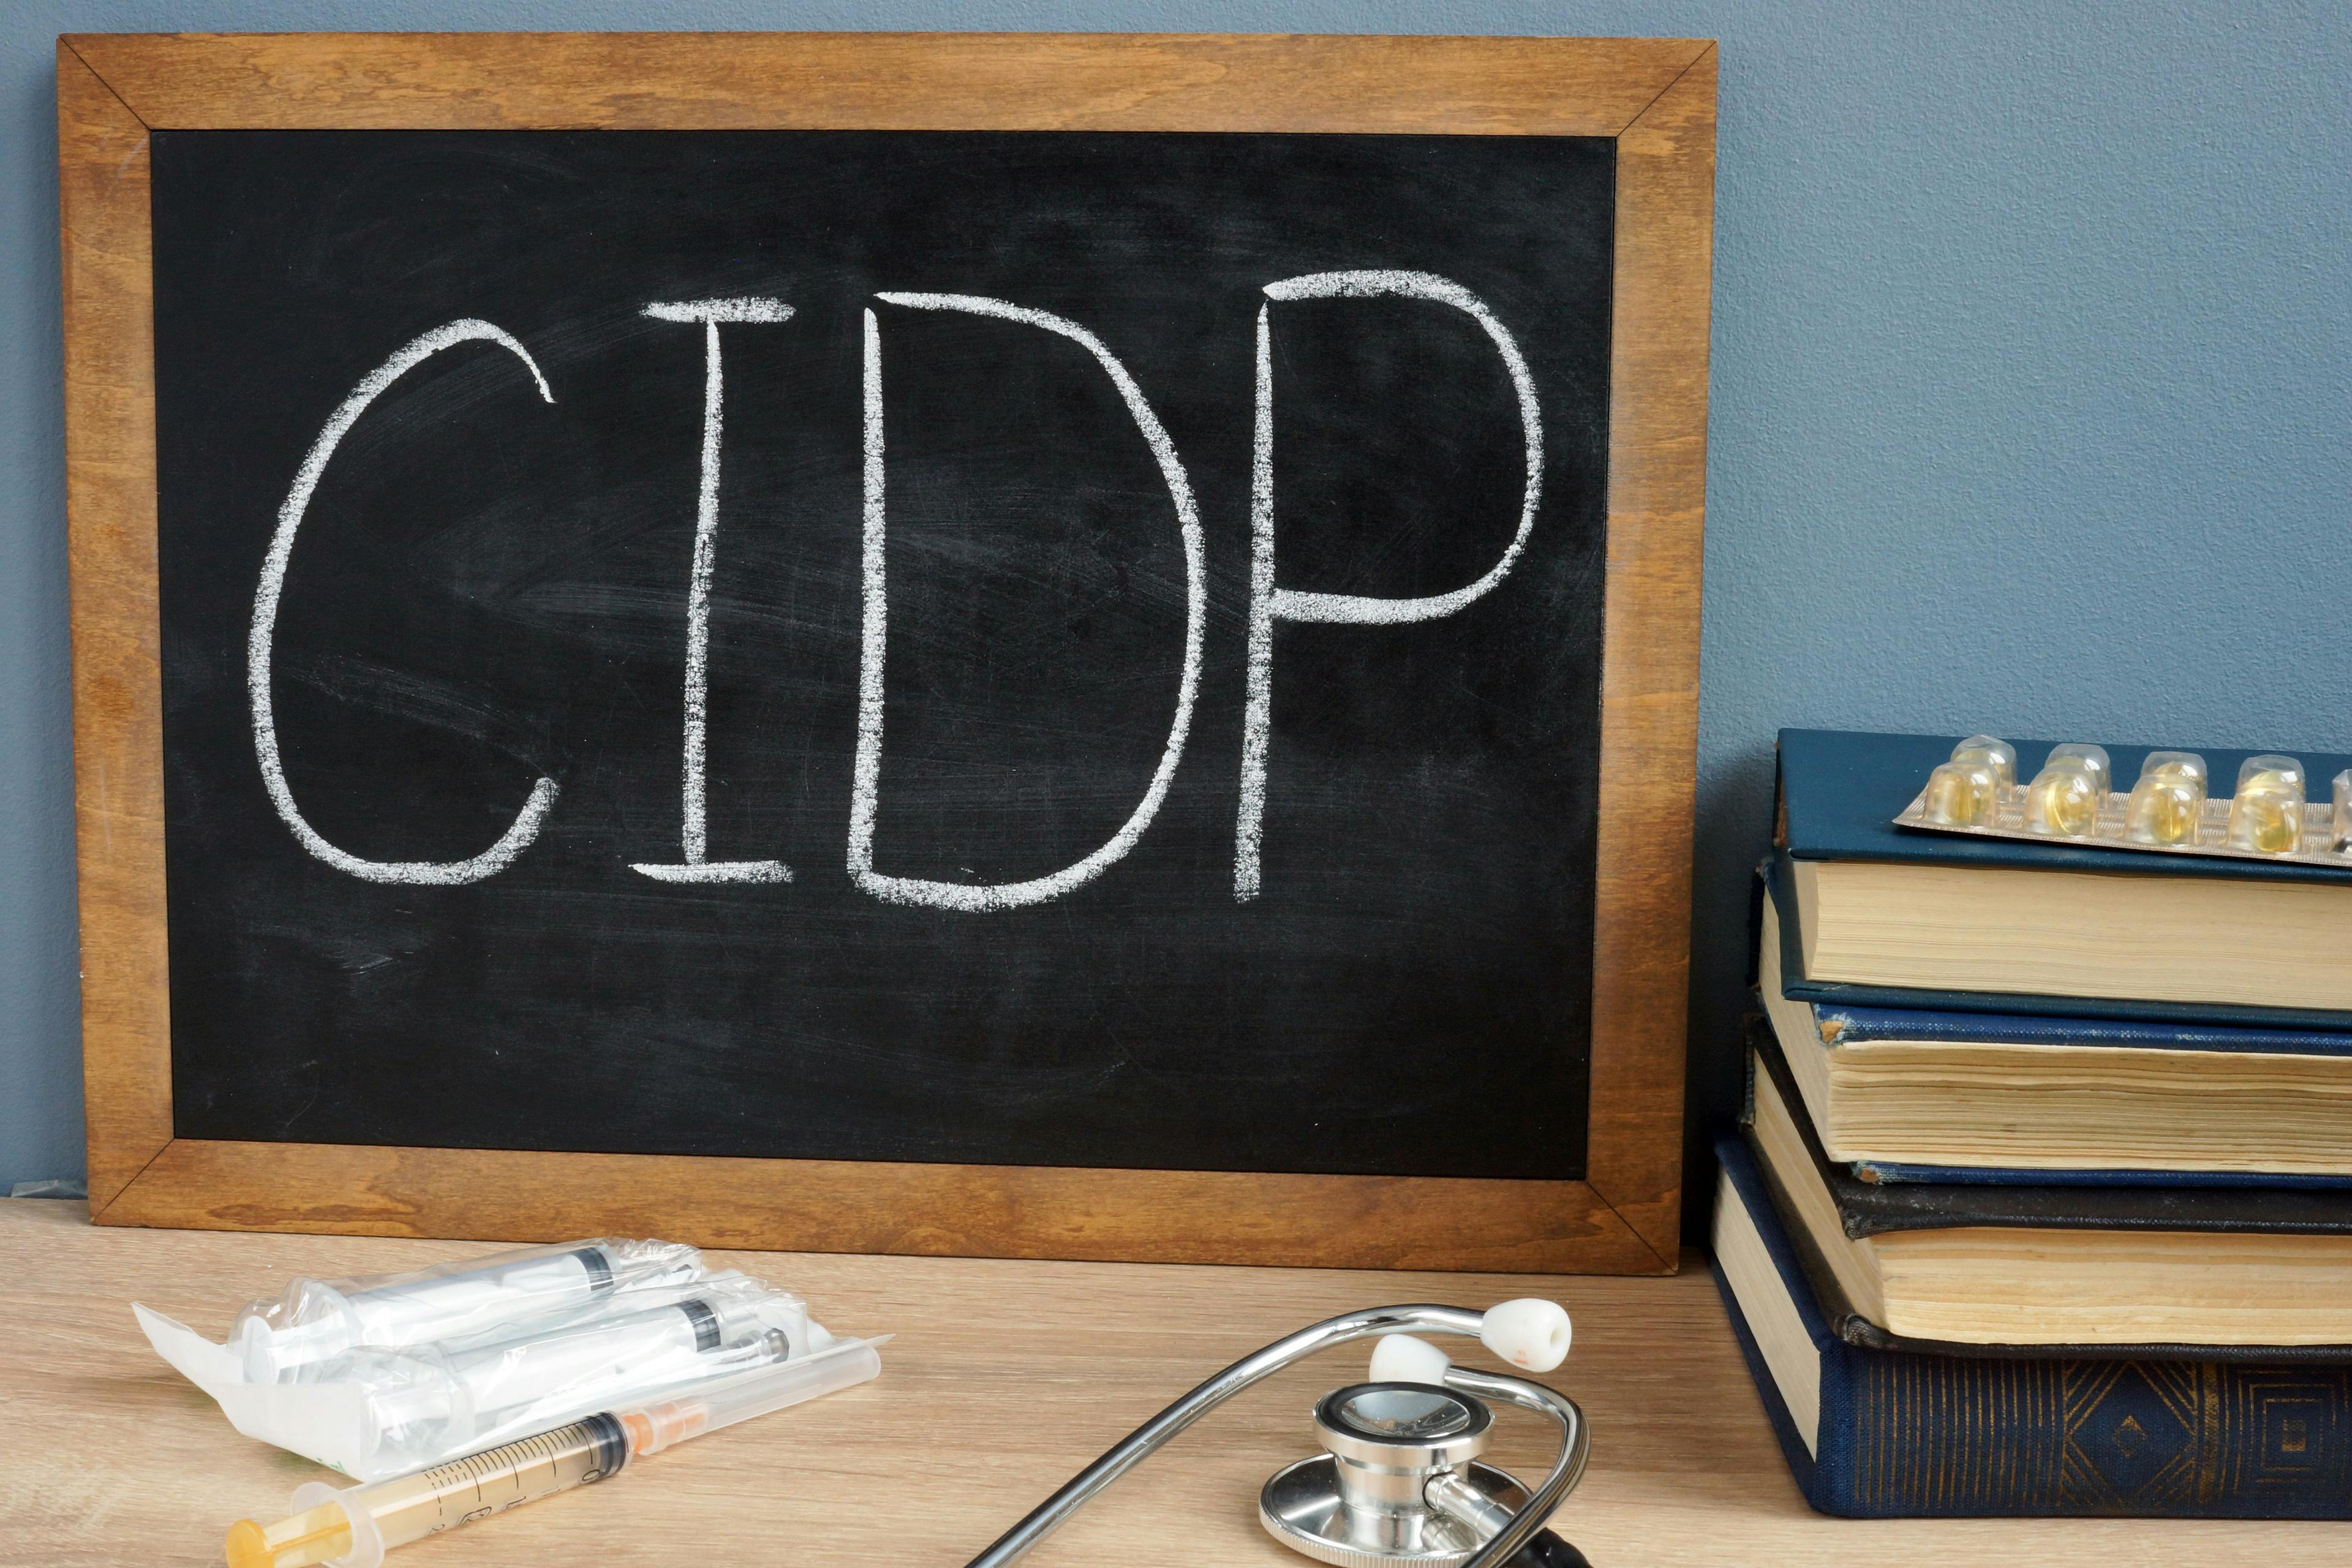 CIDP written on a blackboard.